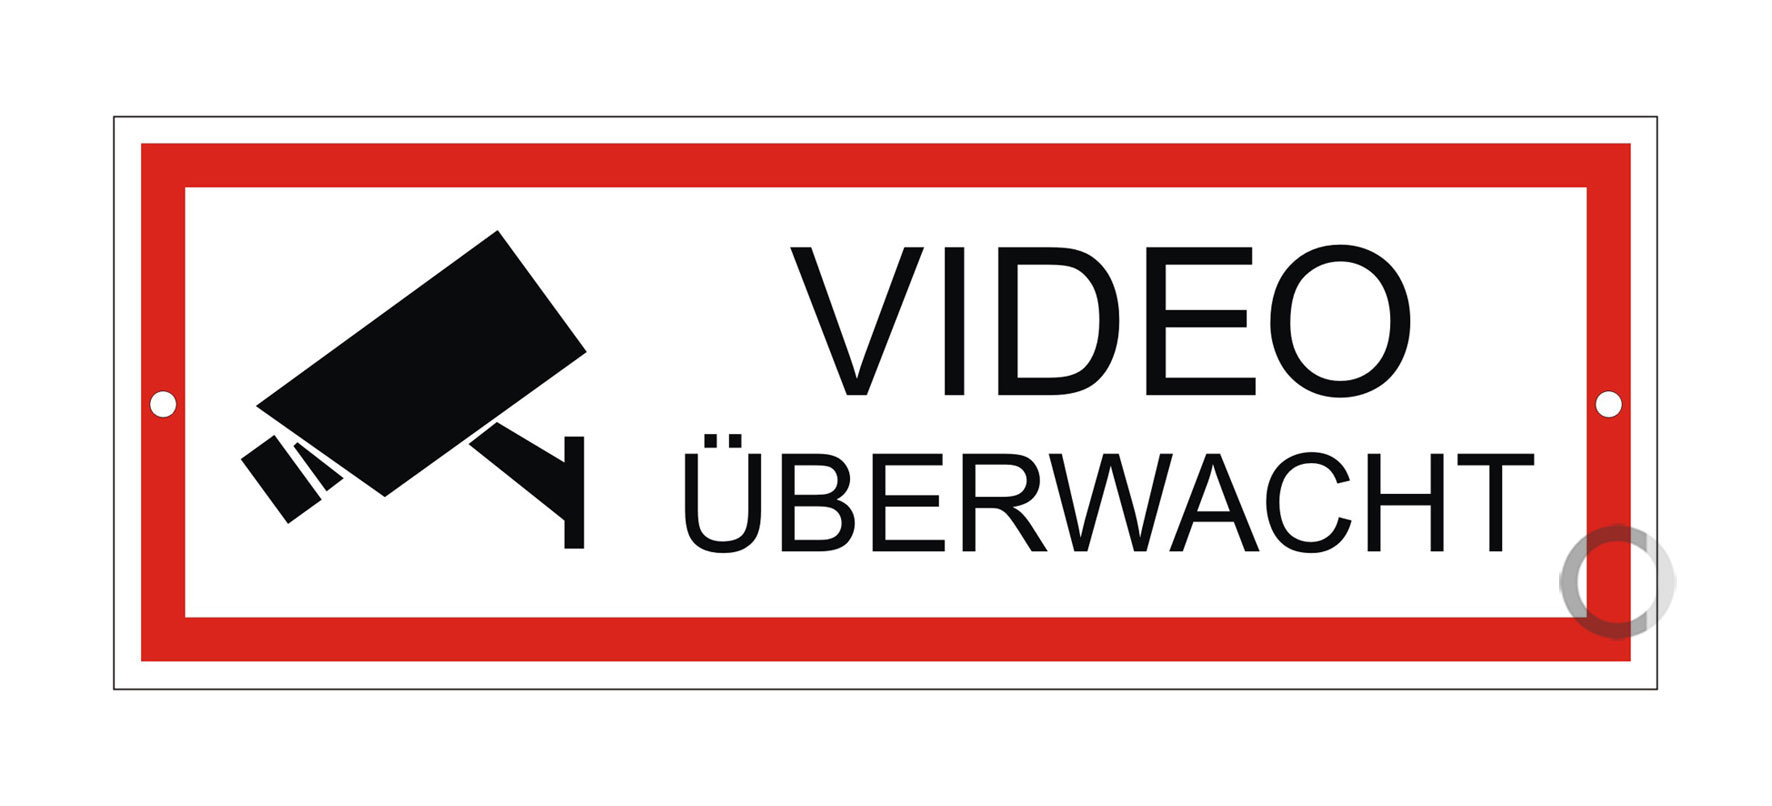 Alu-Schild Achtung Videoüberwachung